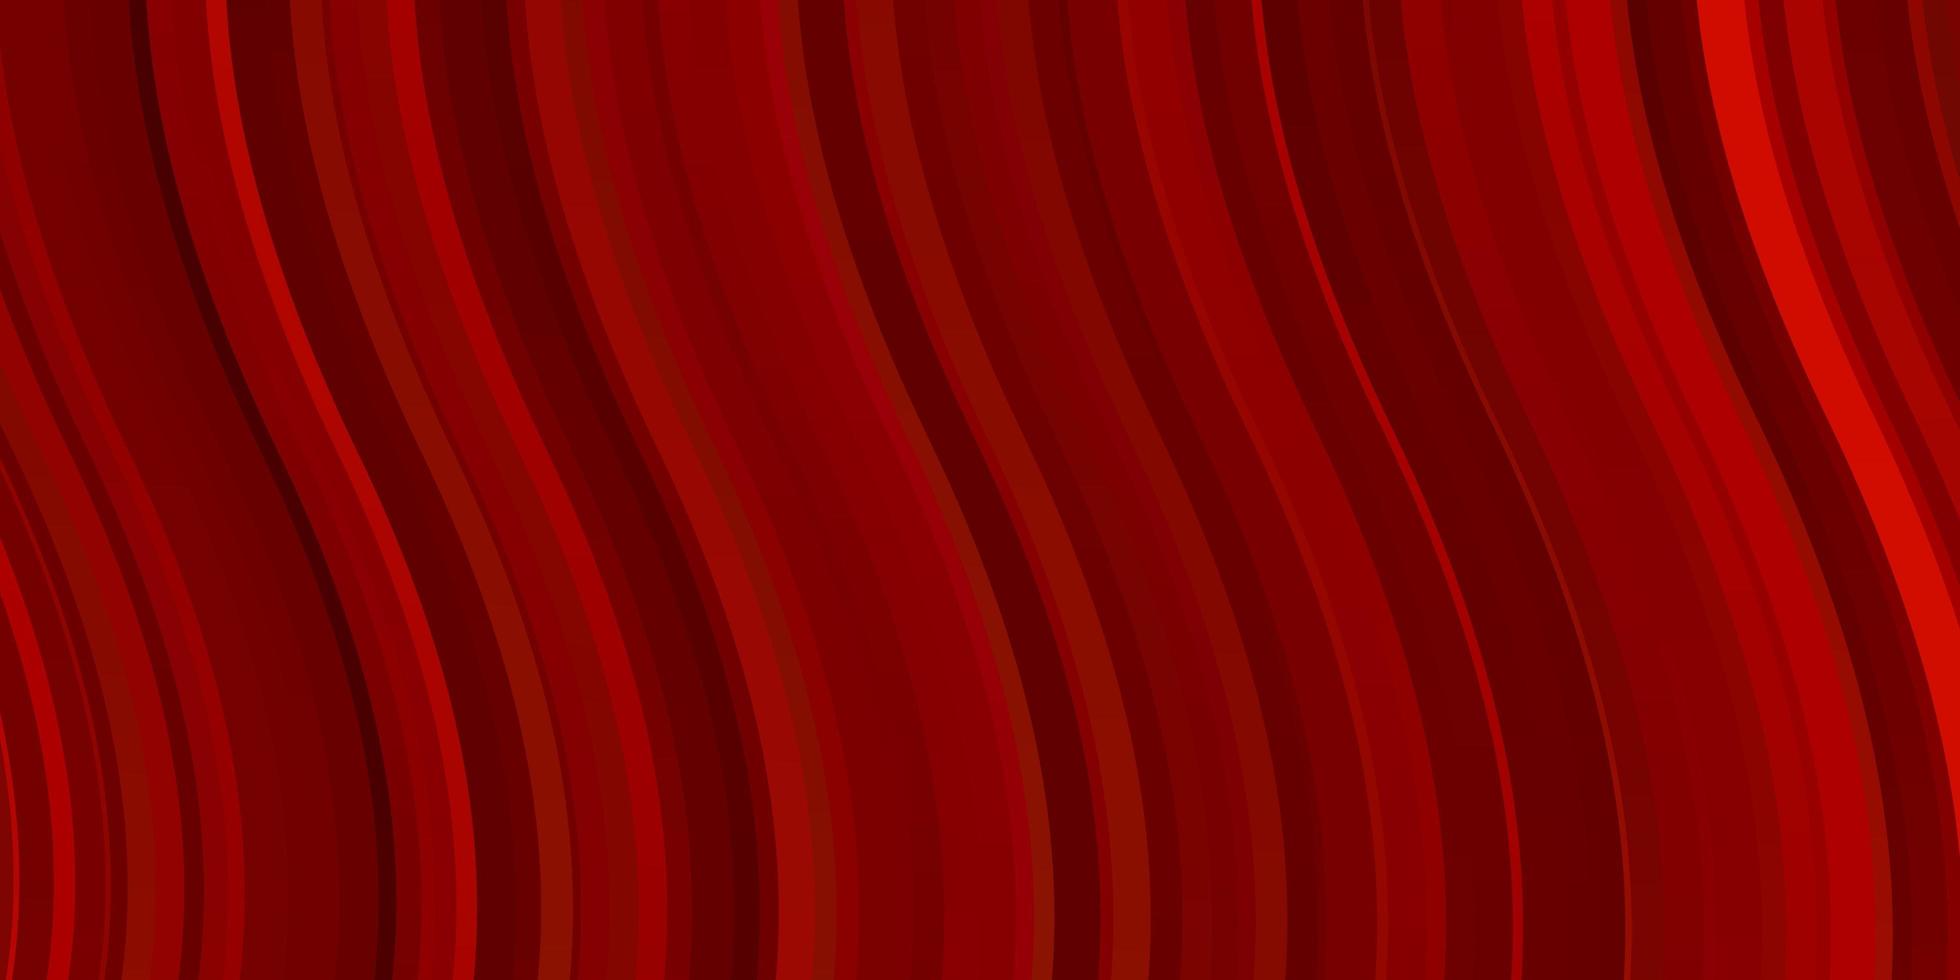 pano de fundo vector vermelho claro com curvas. amostra brilhante com linhas curvas coloridas, formas. padrão para comerciais, anúncios.